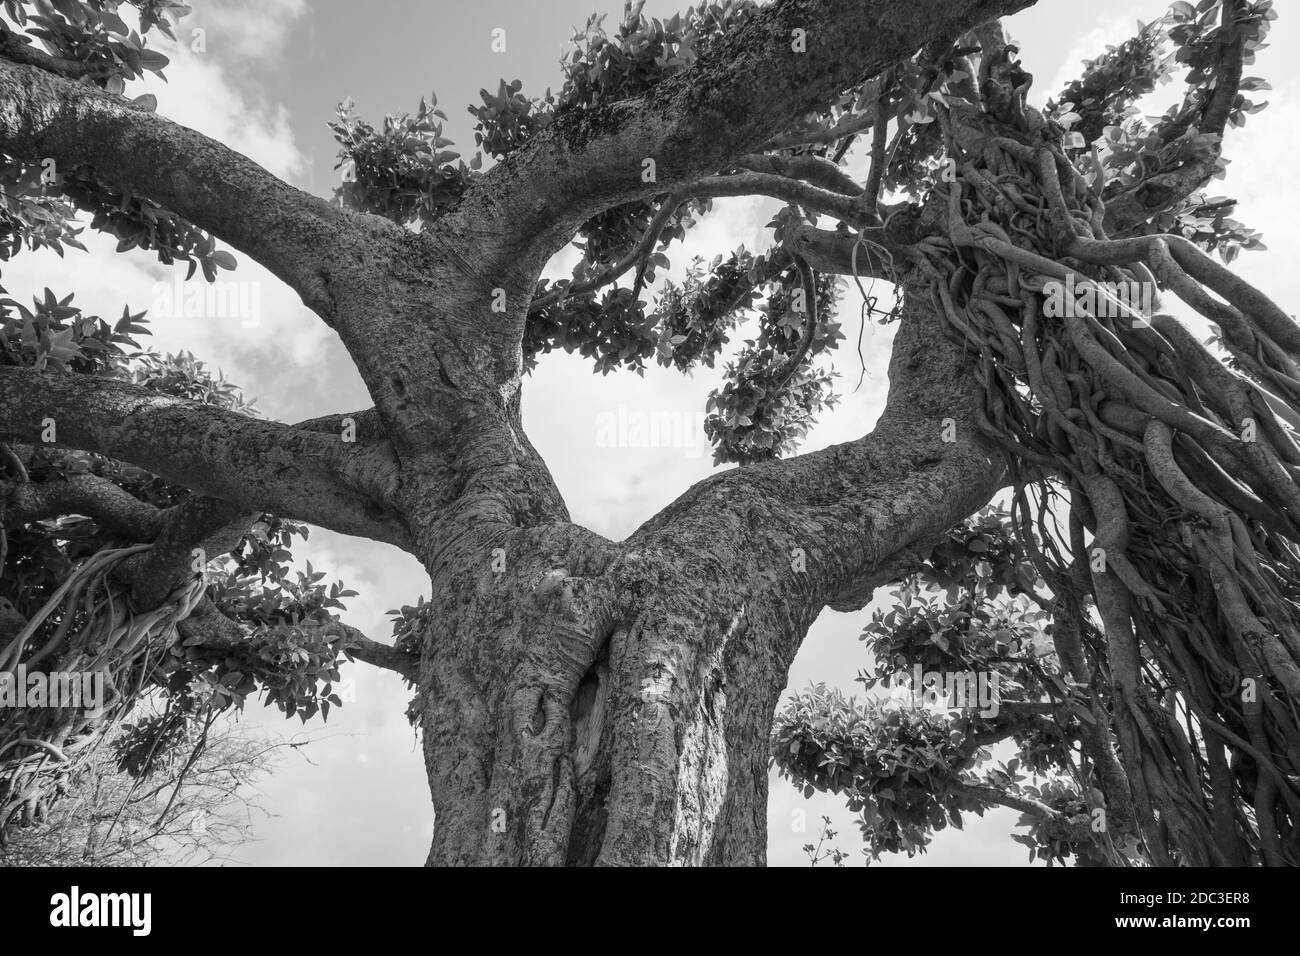 Immagine High Dynamic Range di un vecchio banyan dall'aspetto stravagante albero con molti rami e foglie in monocromia Foto Stock